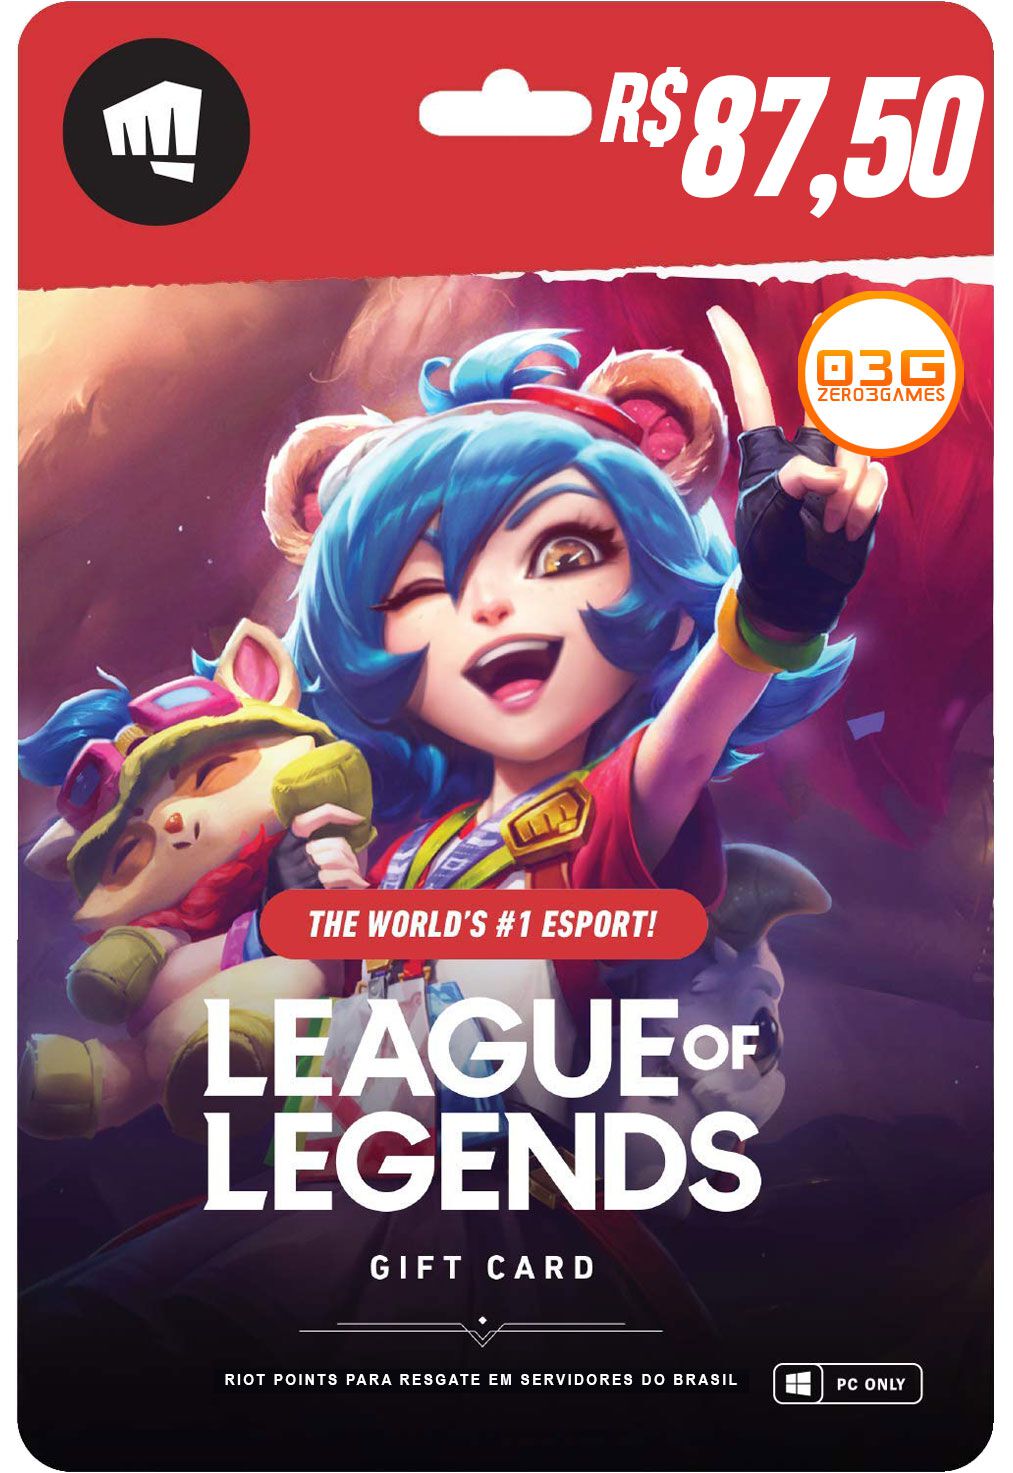 Comprar Cartao League Of Legends 5000 Riot Points Zero3games - cartão de robux